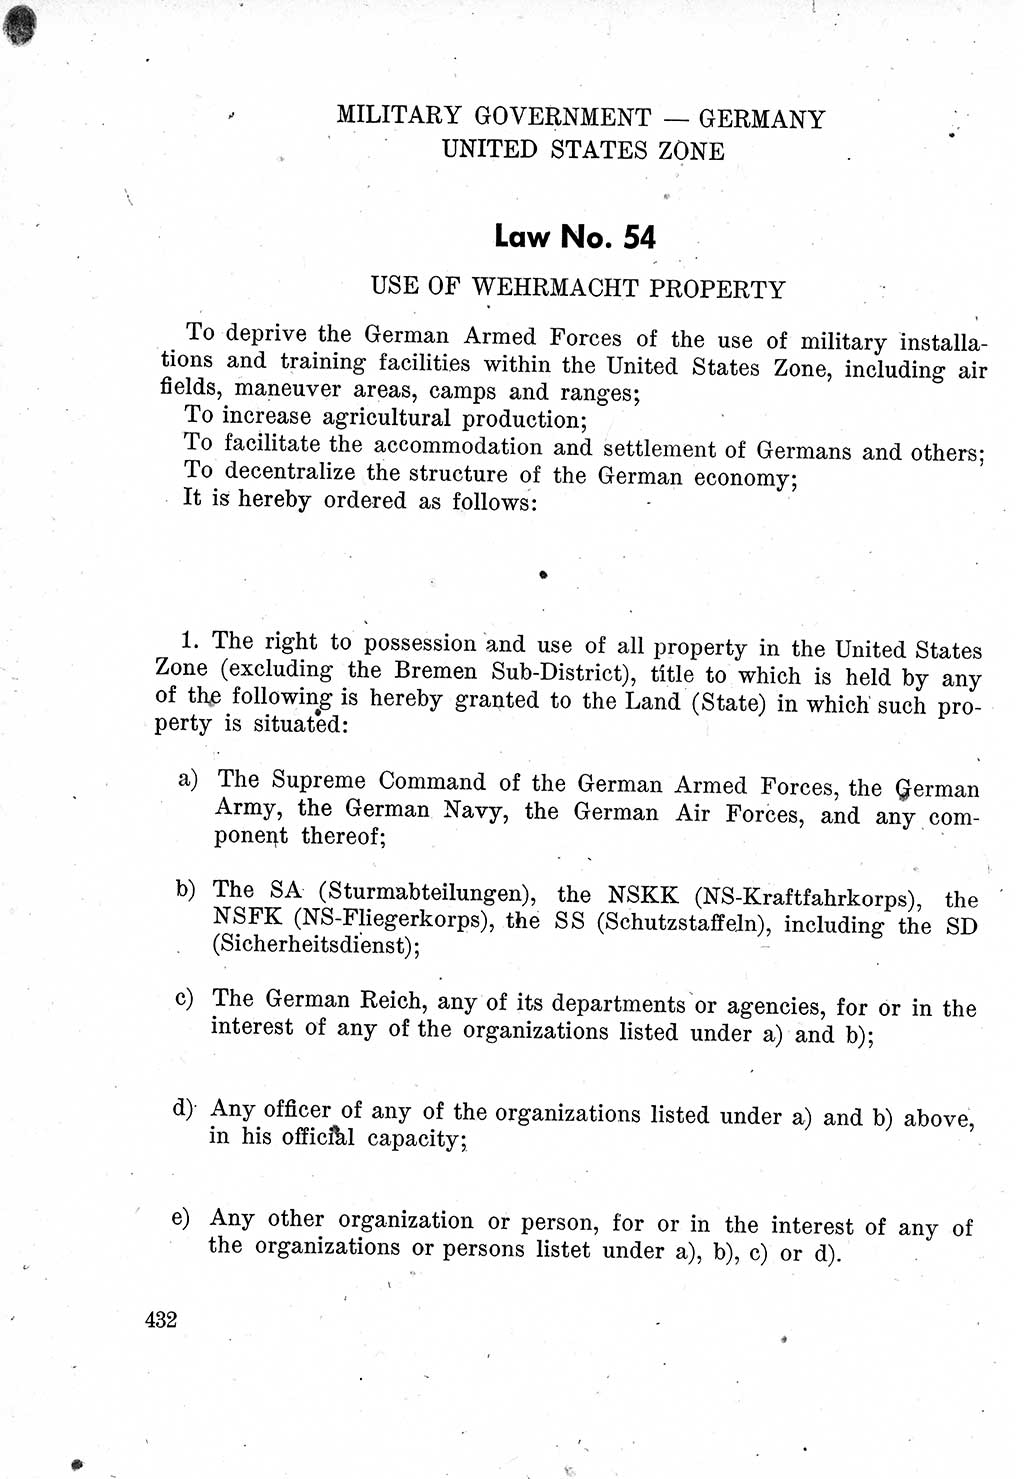 Das Recht der Besatzungsmacht (Deutschland), Proklamationen, Deklerationen, Verordnungen, Gesetze und Bekanntmachungen 1947, Seite 432 (R. Bes. Dtl. 1947, S. 432)